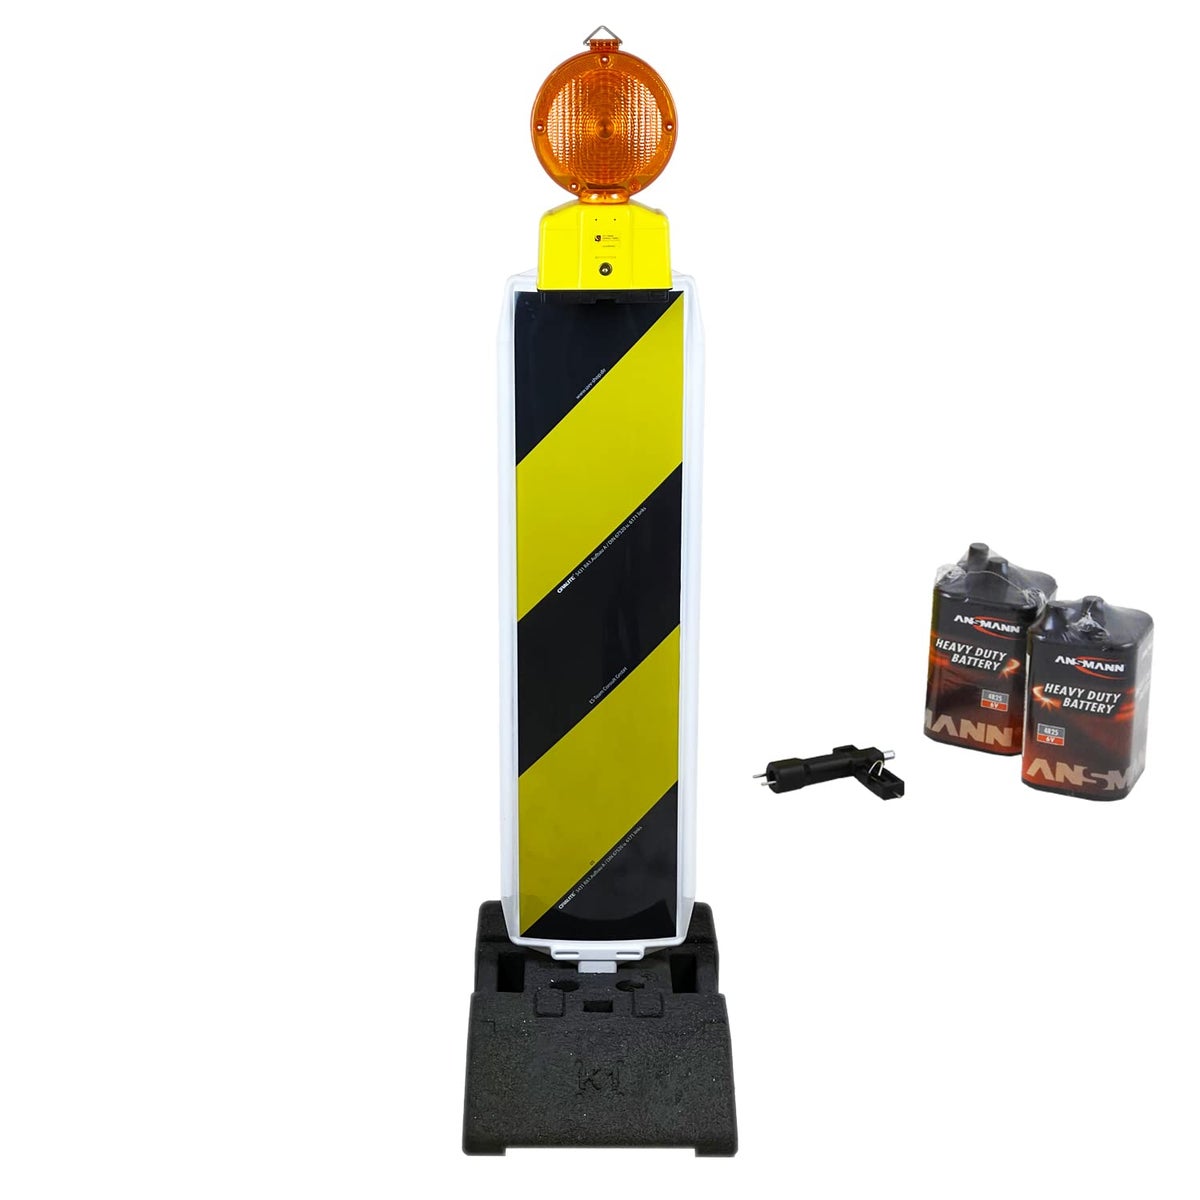 UvV Leitbake Fußplatte (18 / 30 kg) Baustelle rot/weiß oder Lager gelb, schwarz / RA1 schwarz / gelb / K1 (28 kg) / Baustellenleuchte gelb + 2 Batterien inkl. Lampenschlüssel